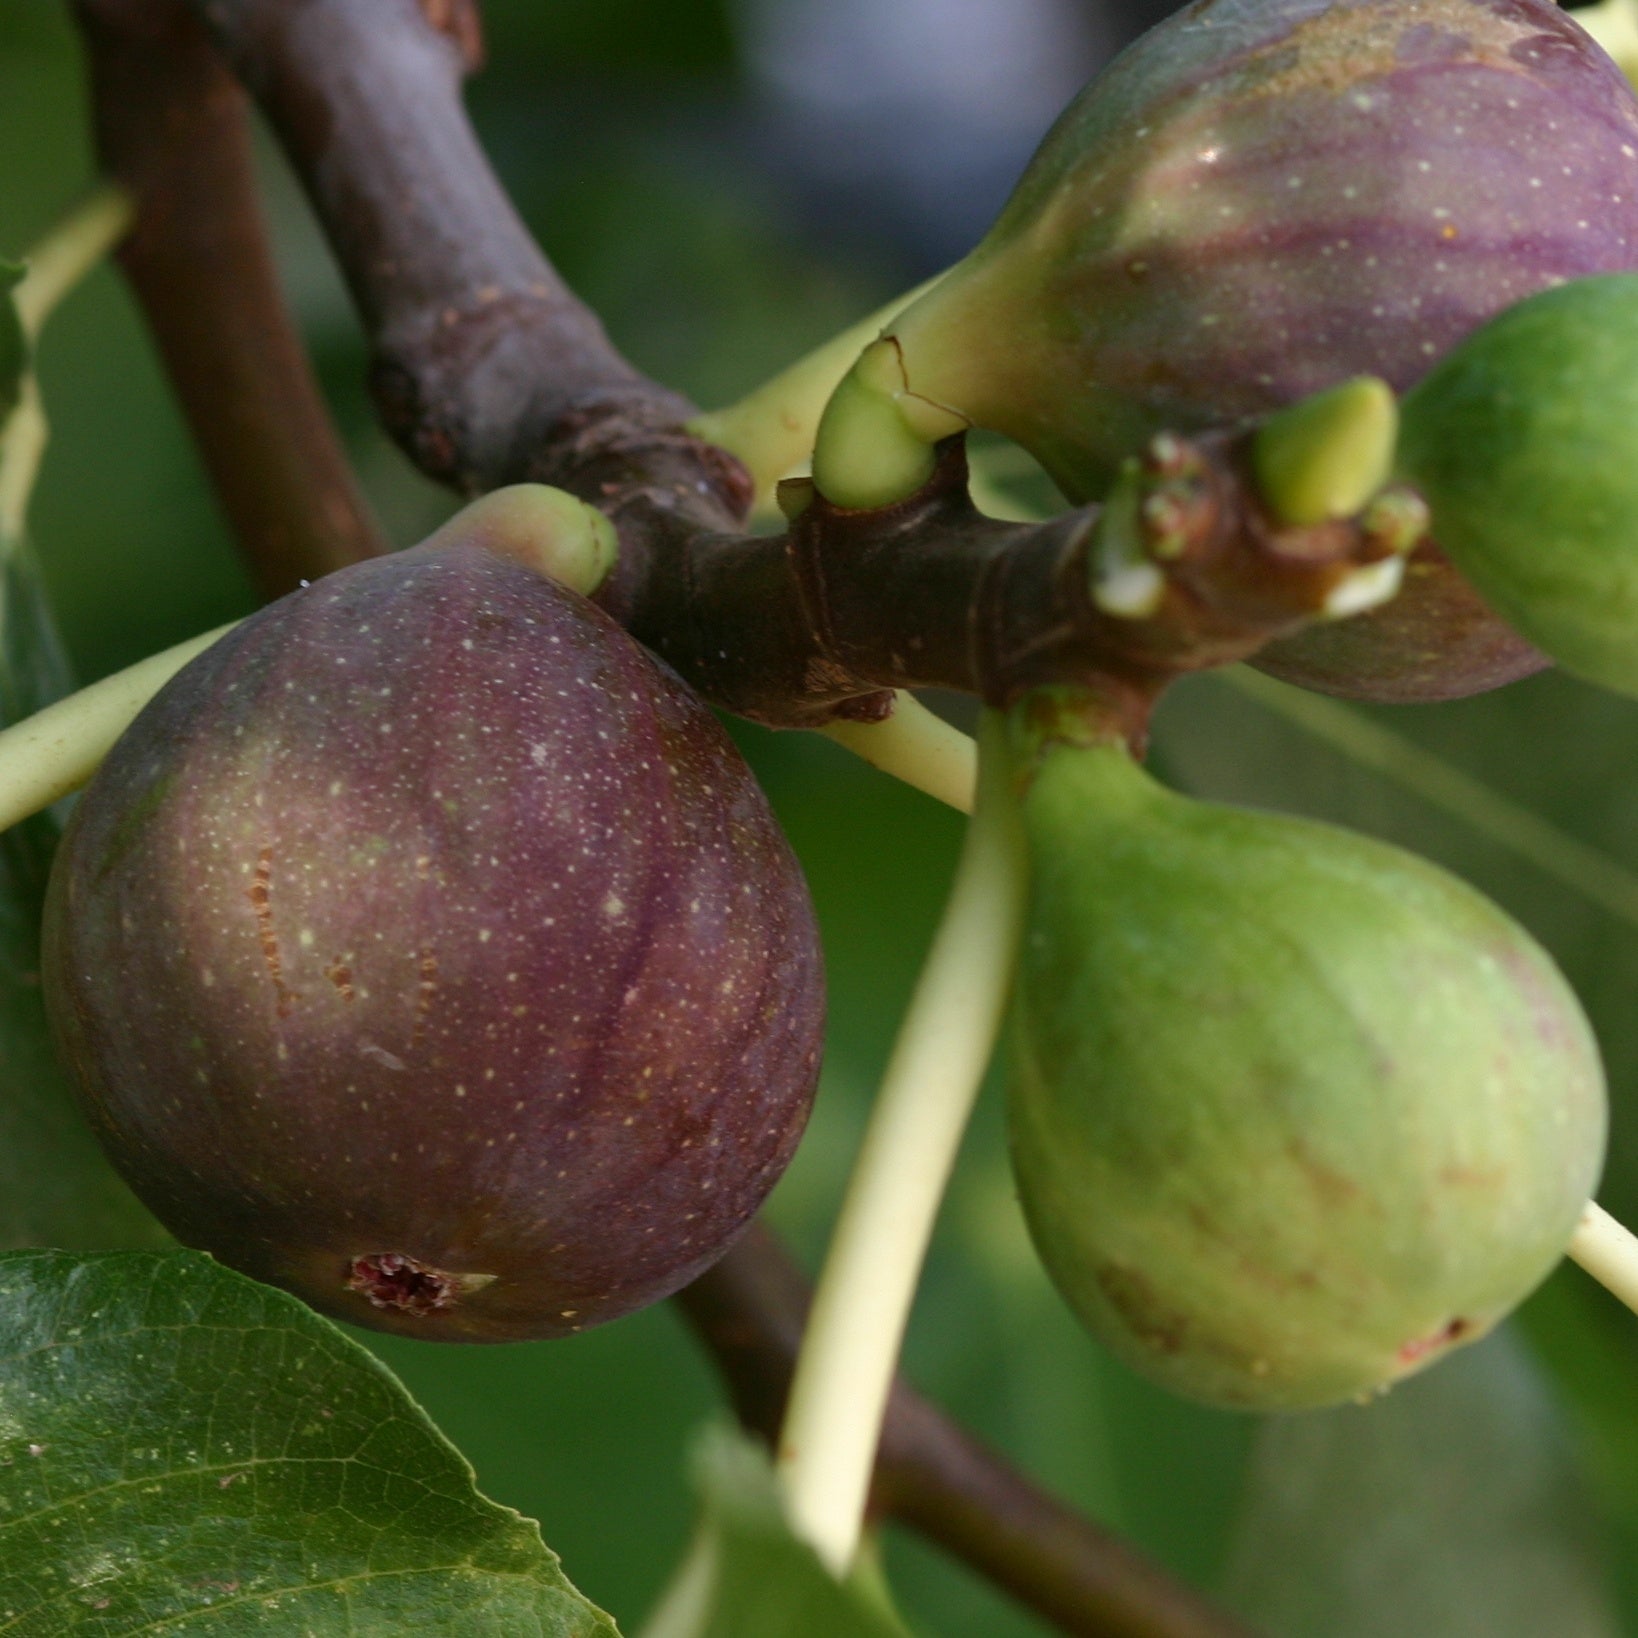 Feigenbaum Violette de Solliès - Ficus carica sollies - Obst